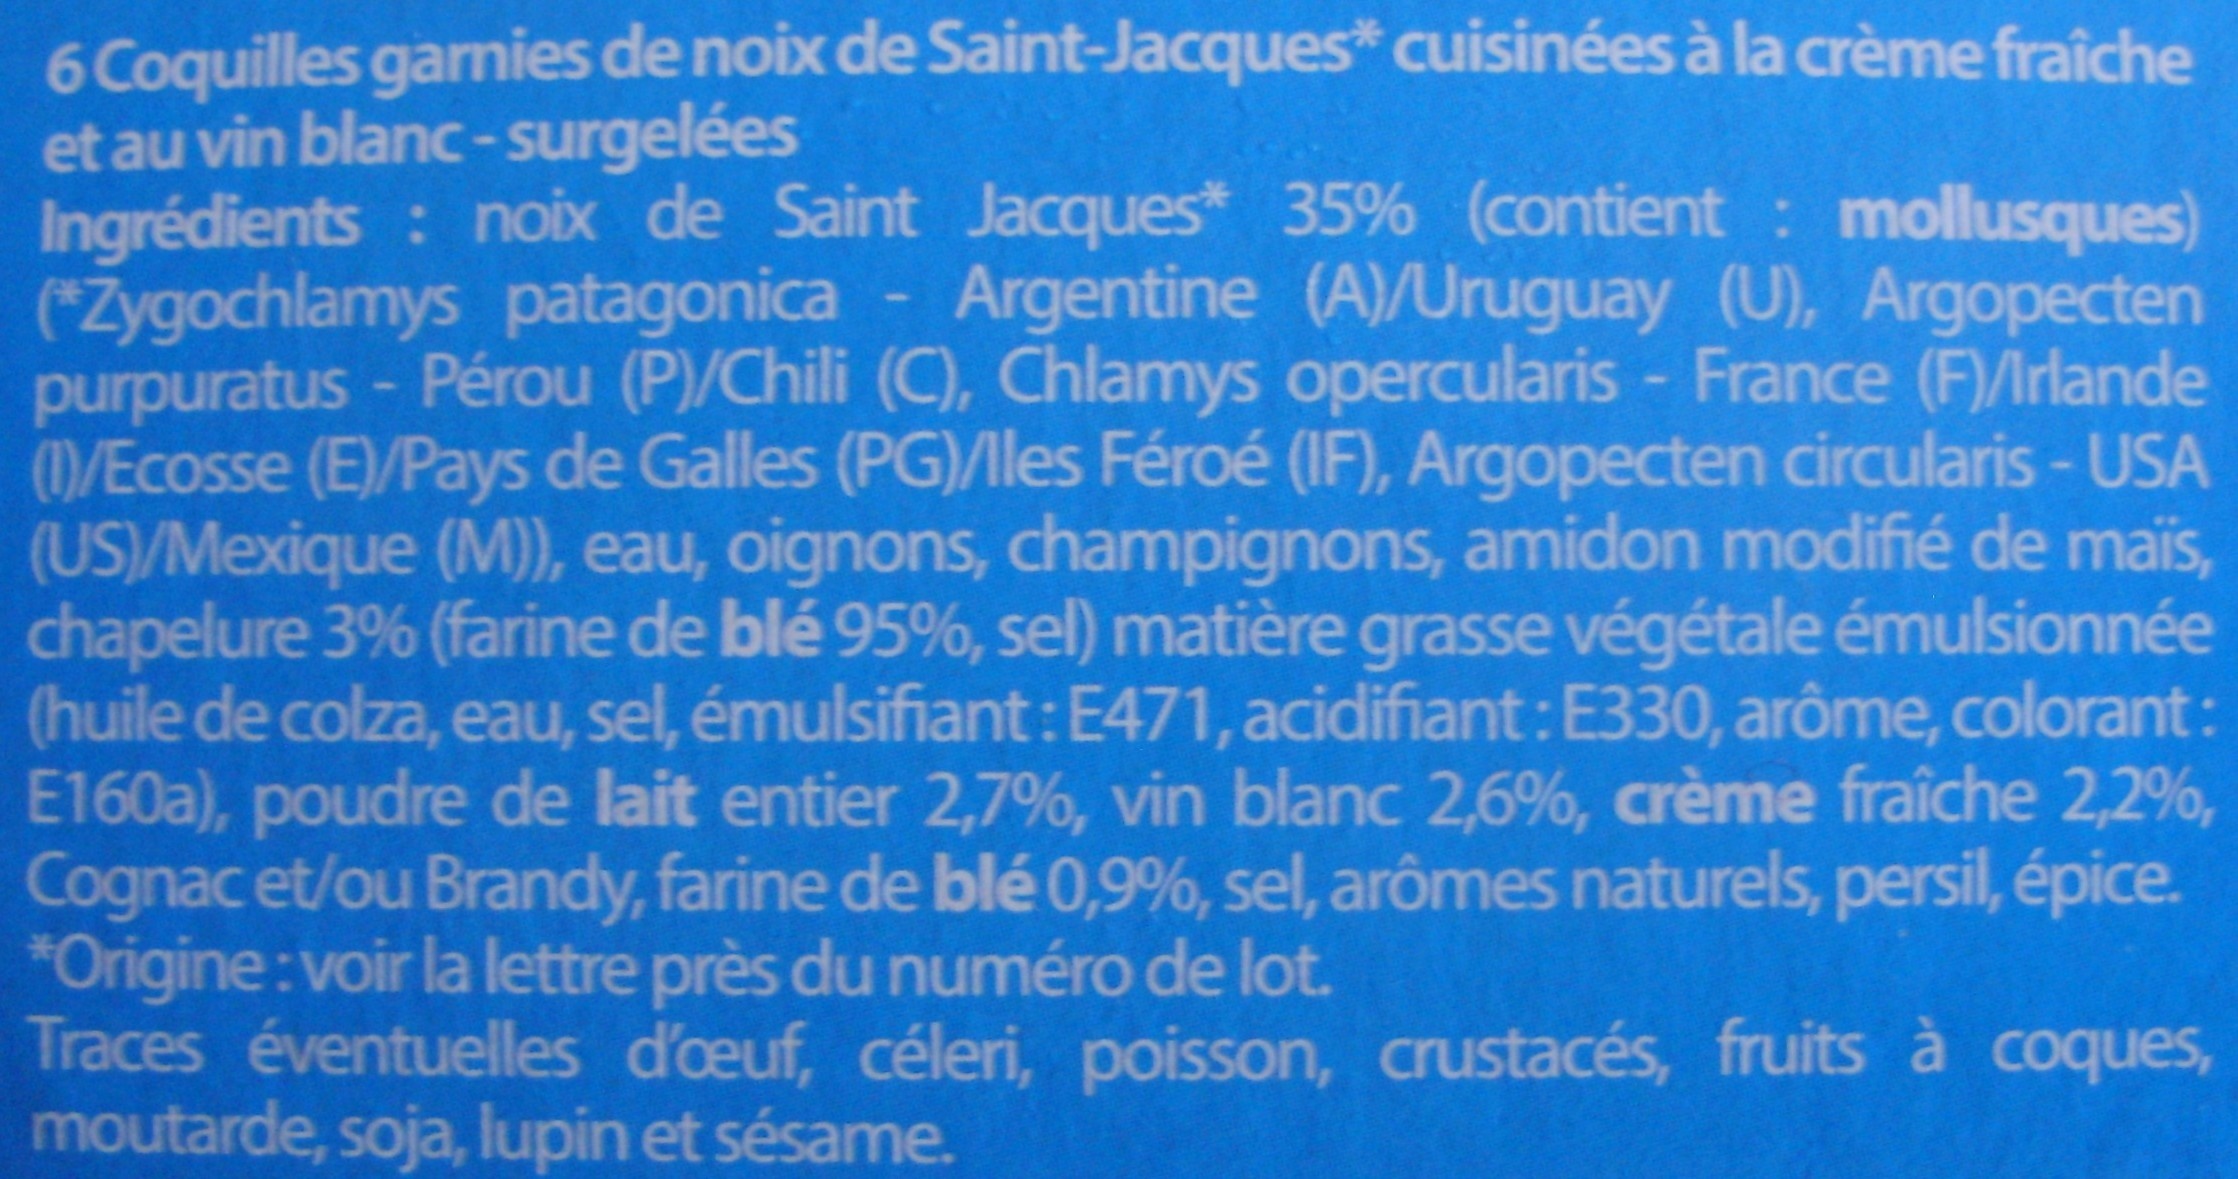 6 coquilles st Jacques à la bretonne - Ingredienser - fr